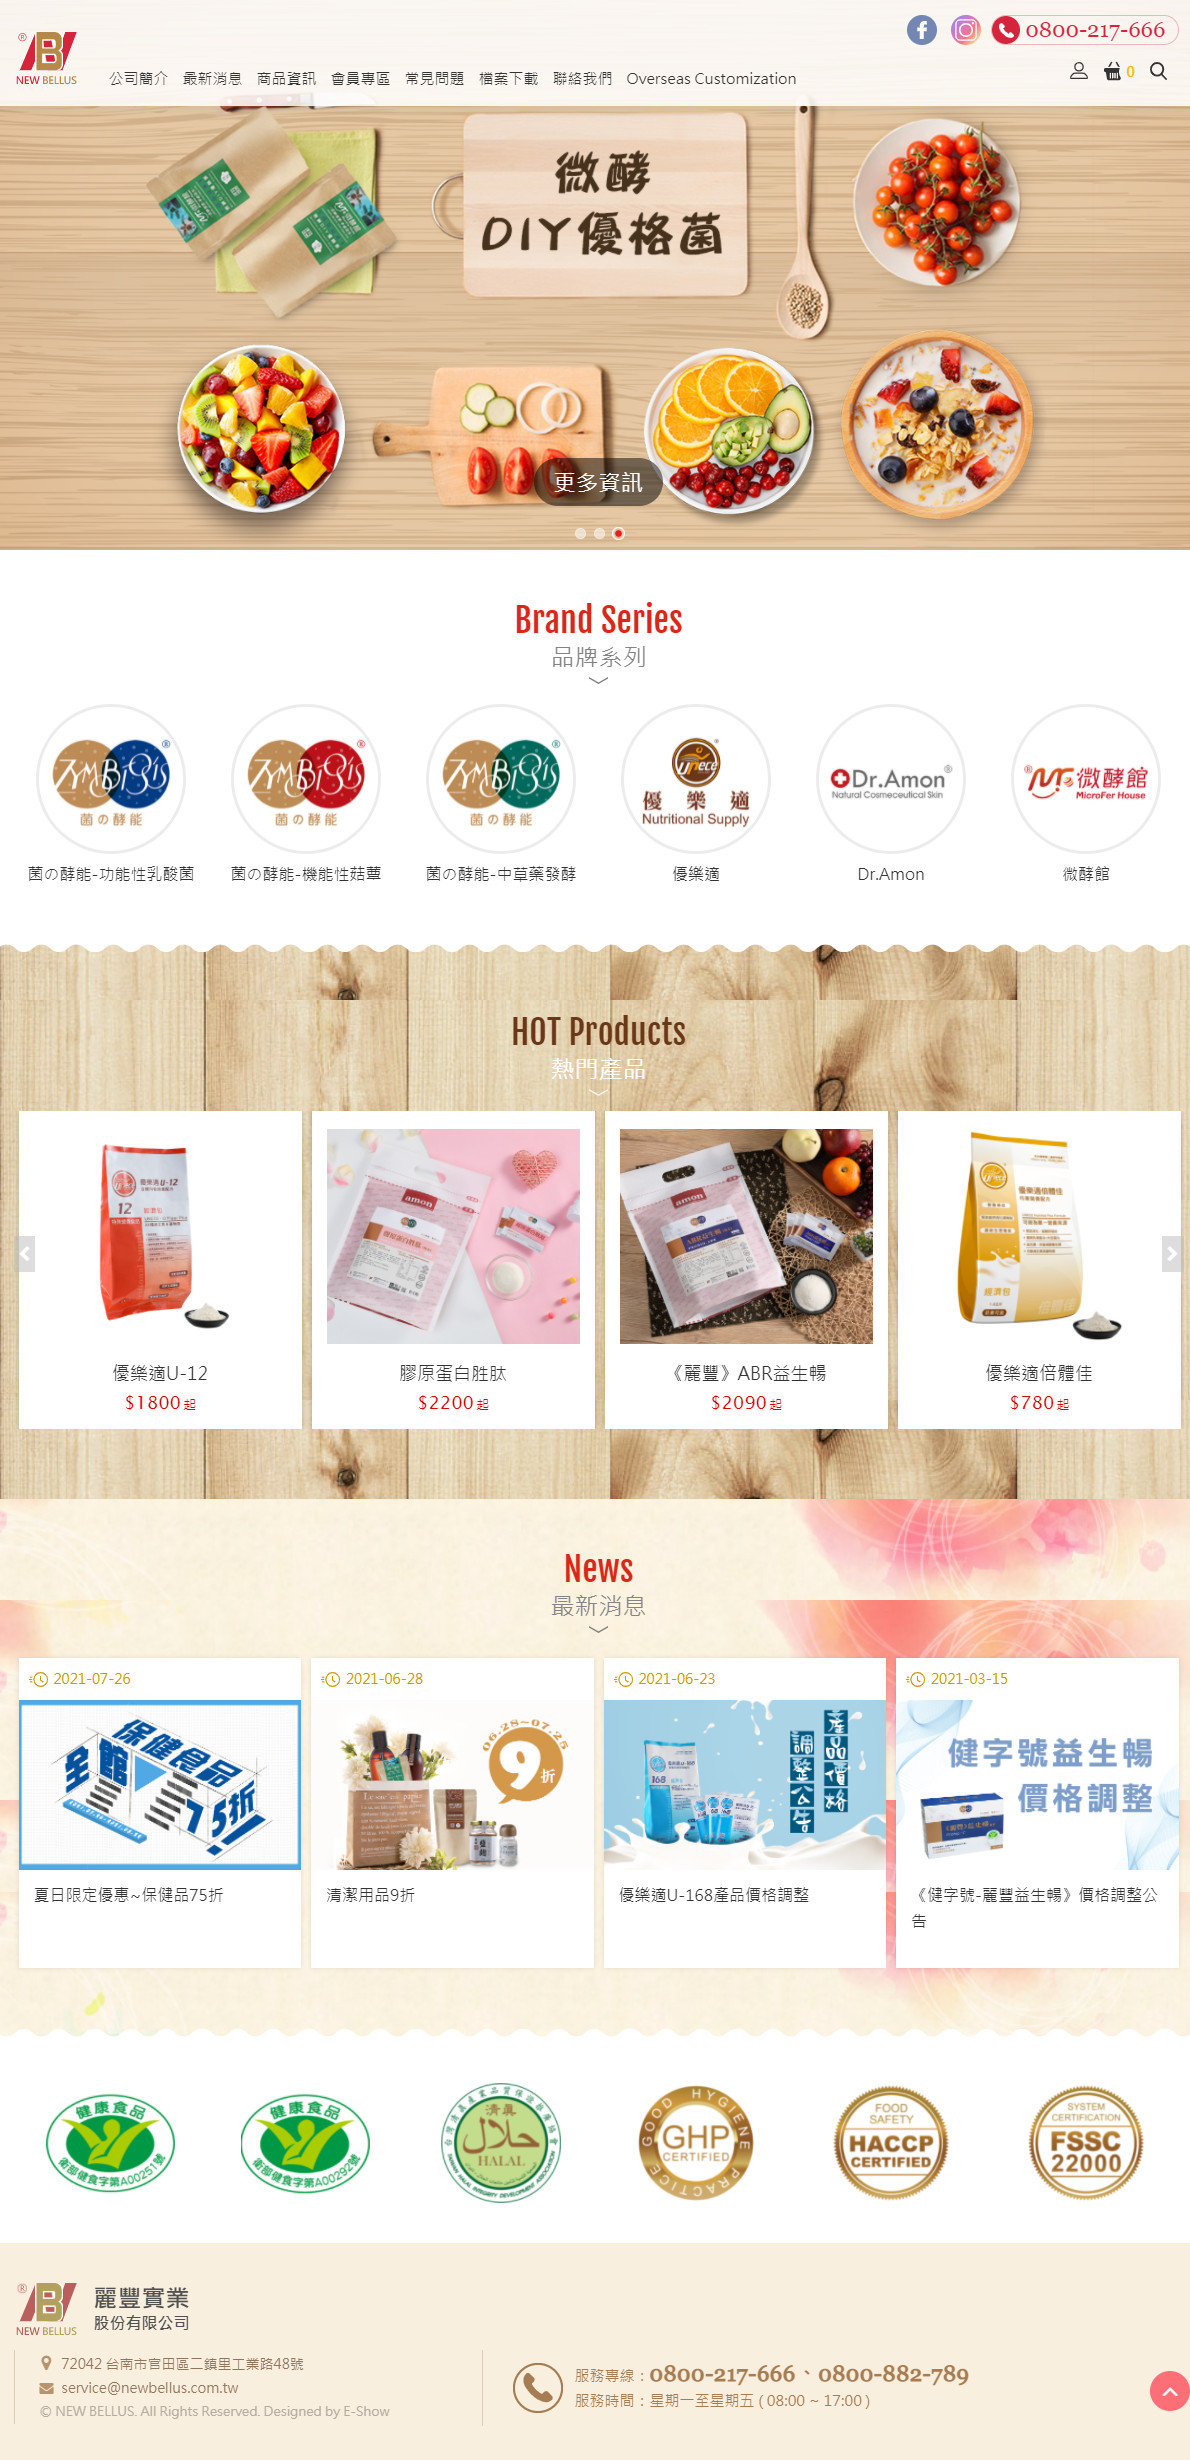 麗豐微酵館 觀光工廠購物網站設計
網站設計